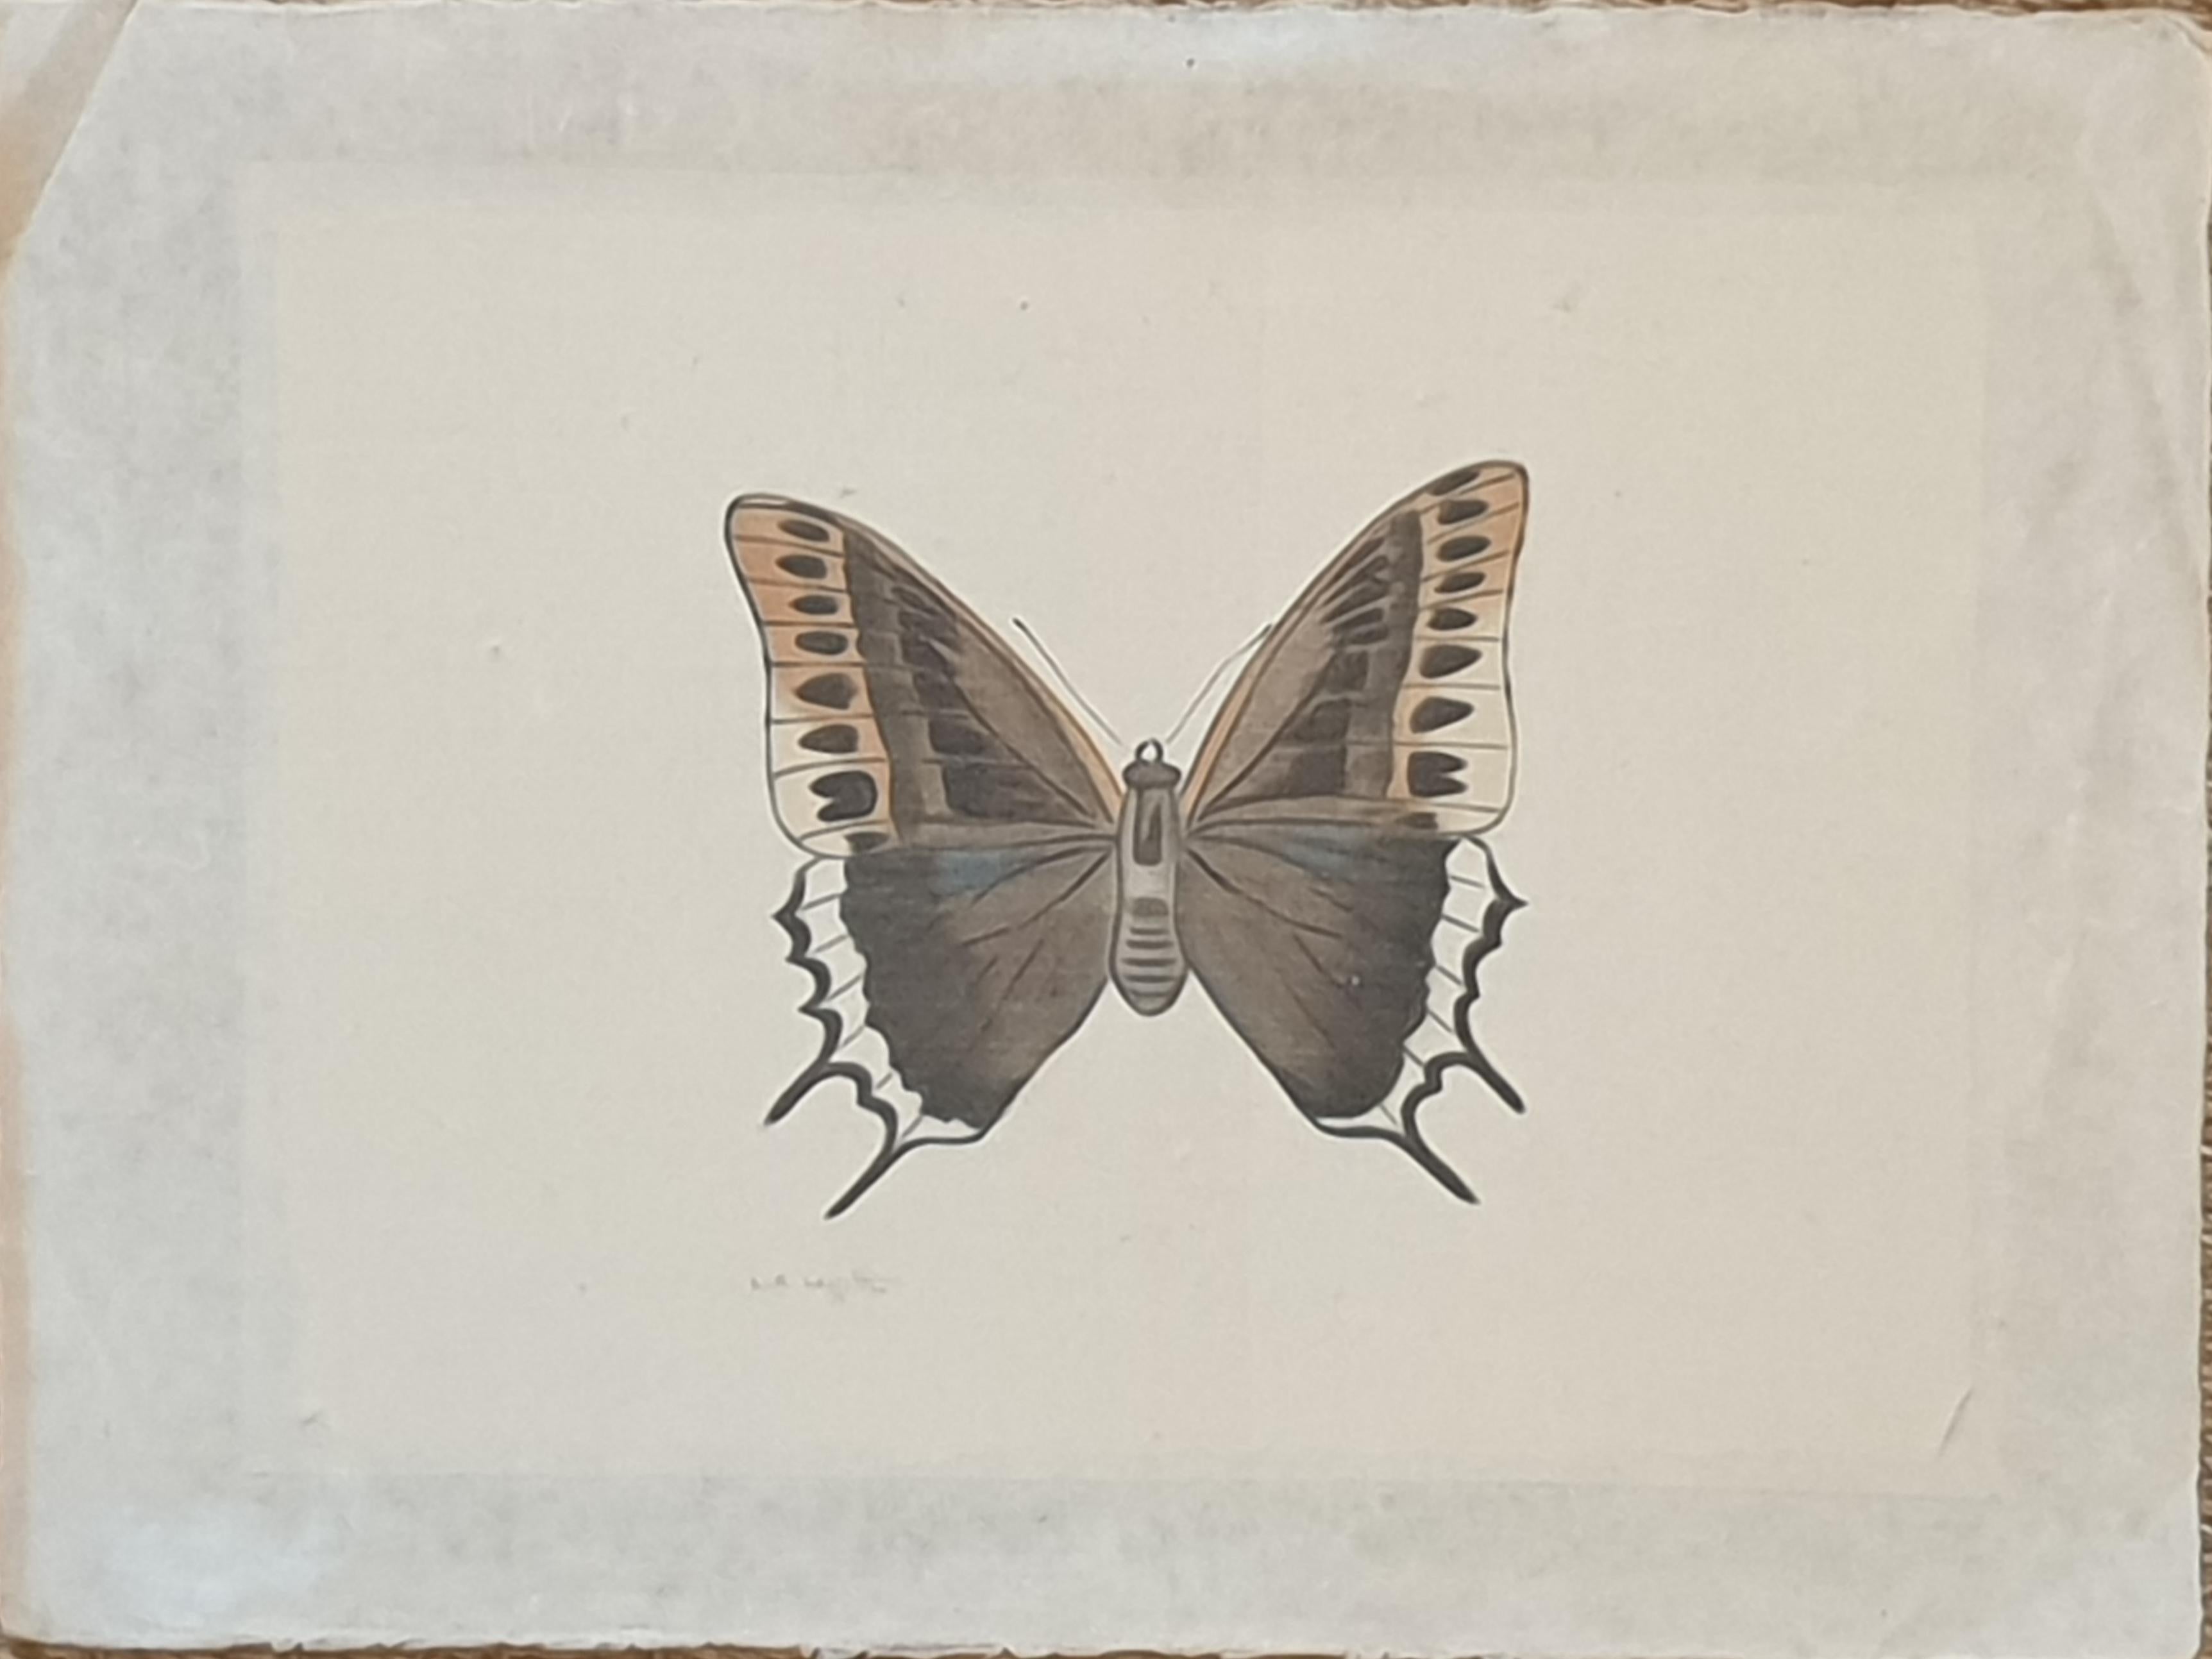 Étude d'un papillon, papier de soie appliqué à l'aquarelle fait main. La Roche Laffitte